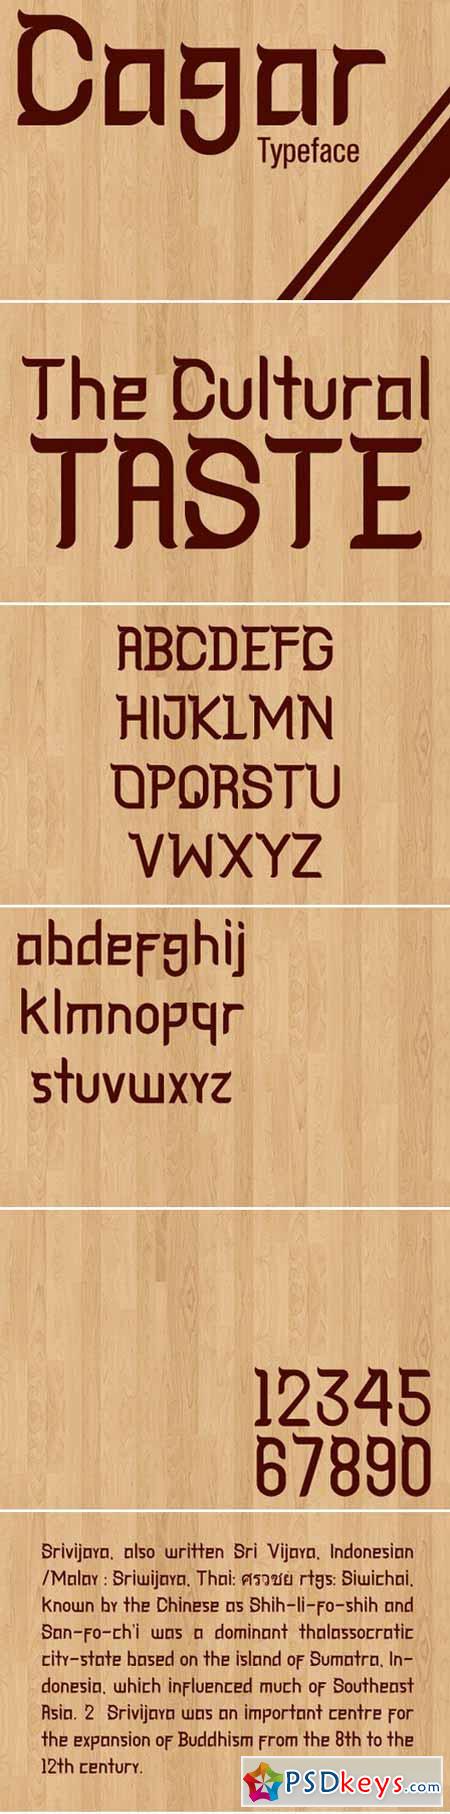 Cagar Typeface